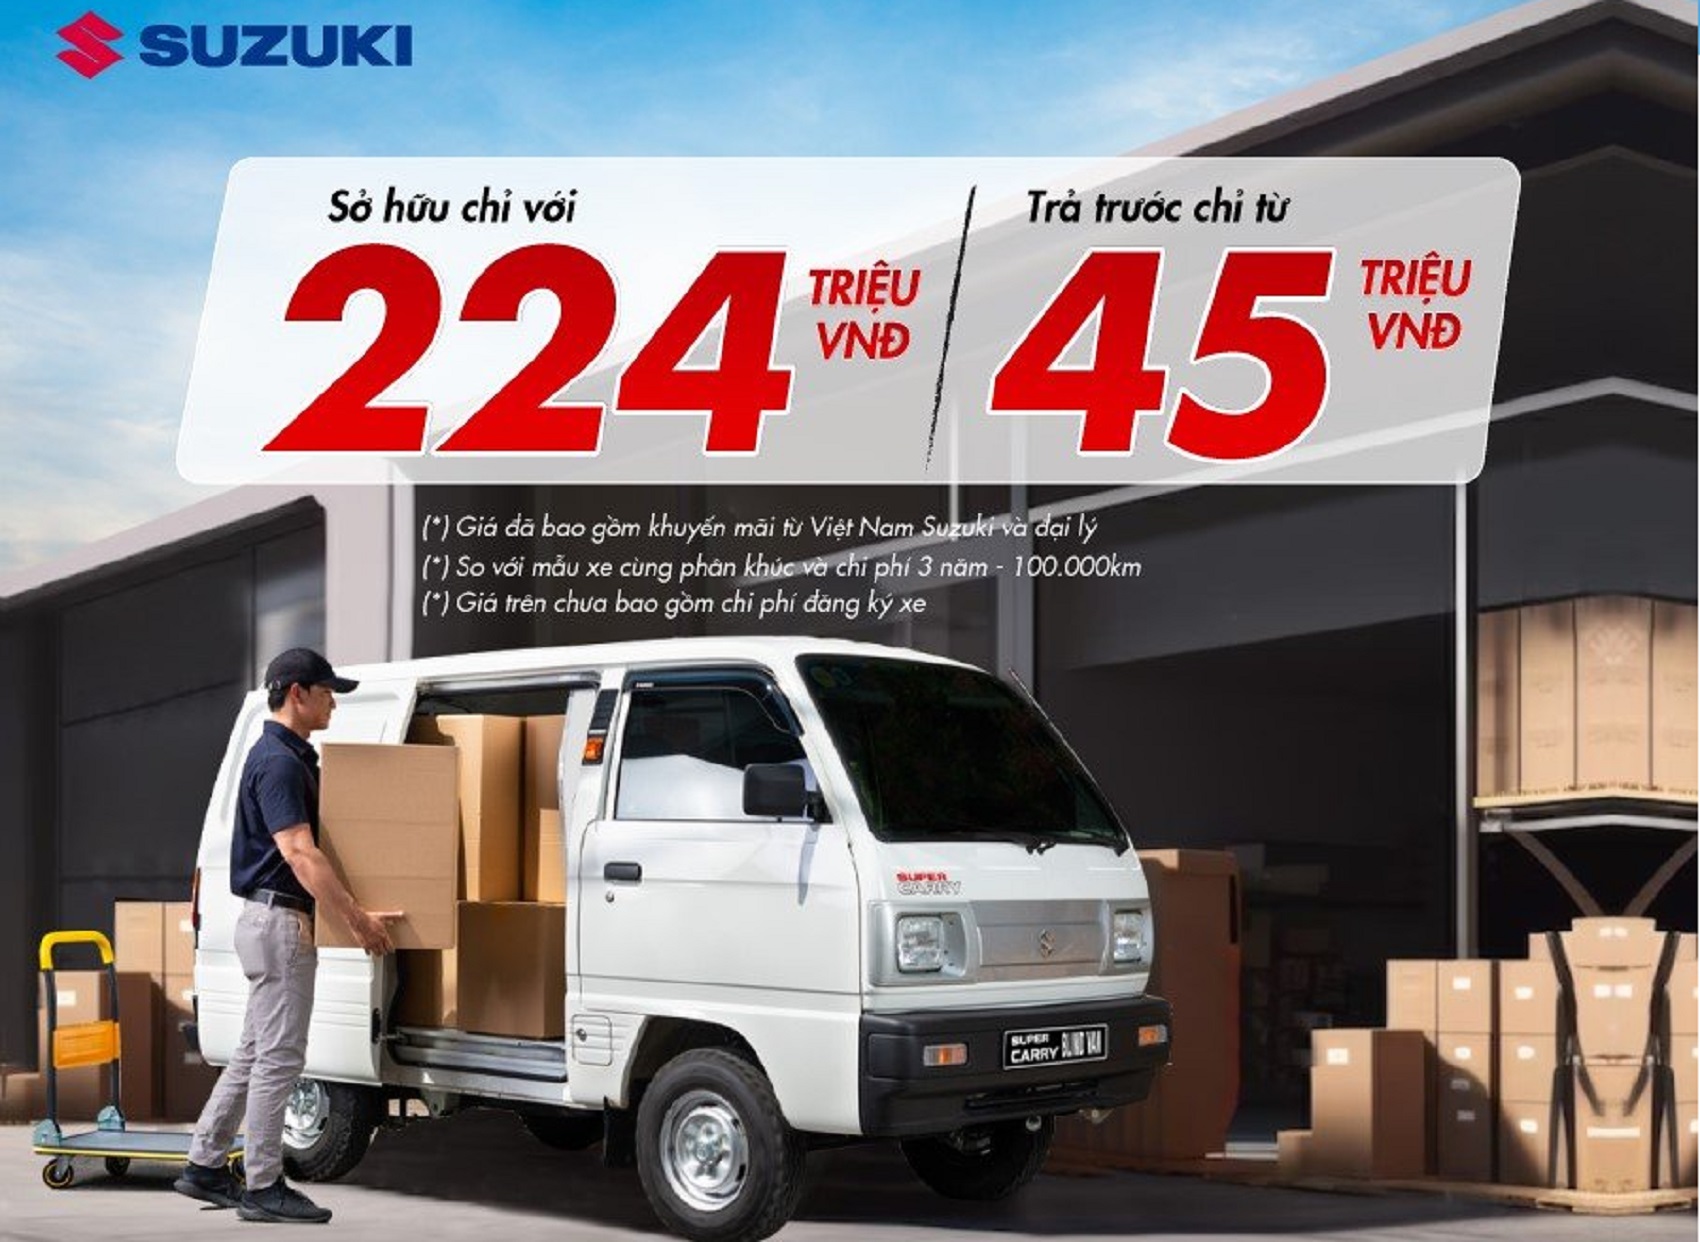 “Tải đa năng” Suzuki Blind Van áp dụng ưu đãi cuối năm chỉ trả trước 45 triệu đồng để sở hữu